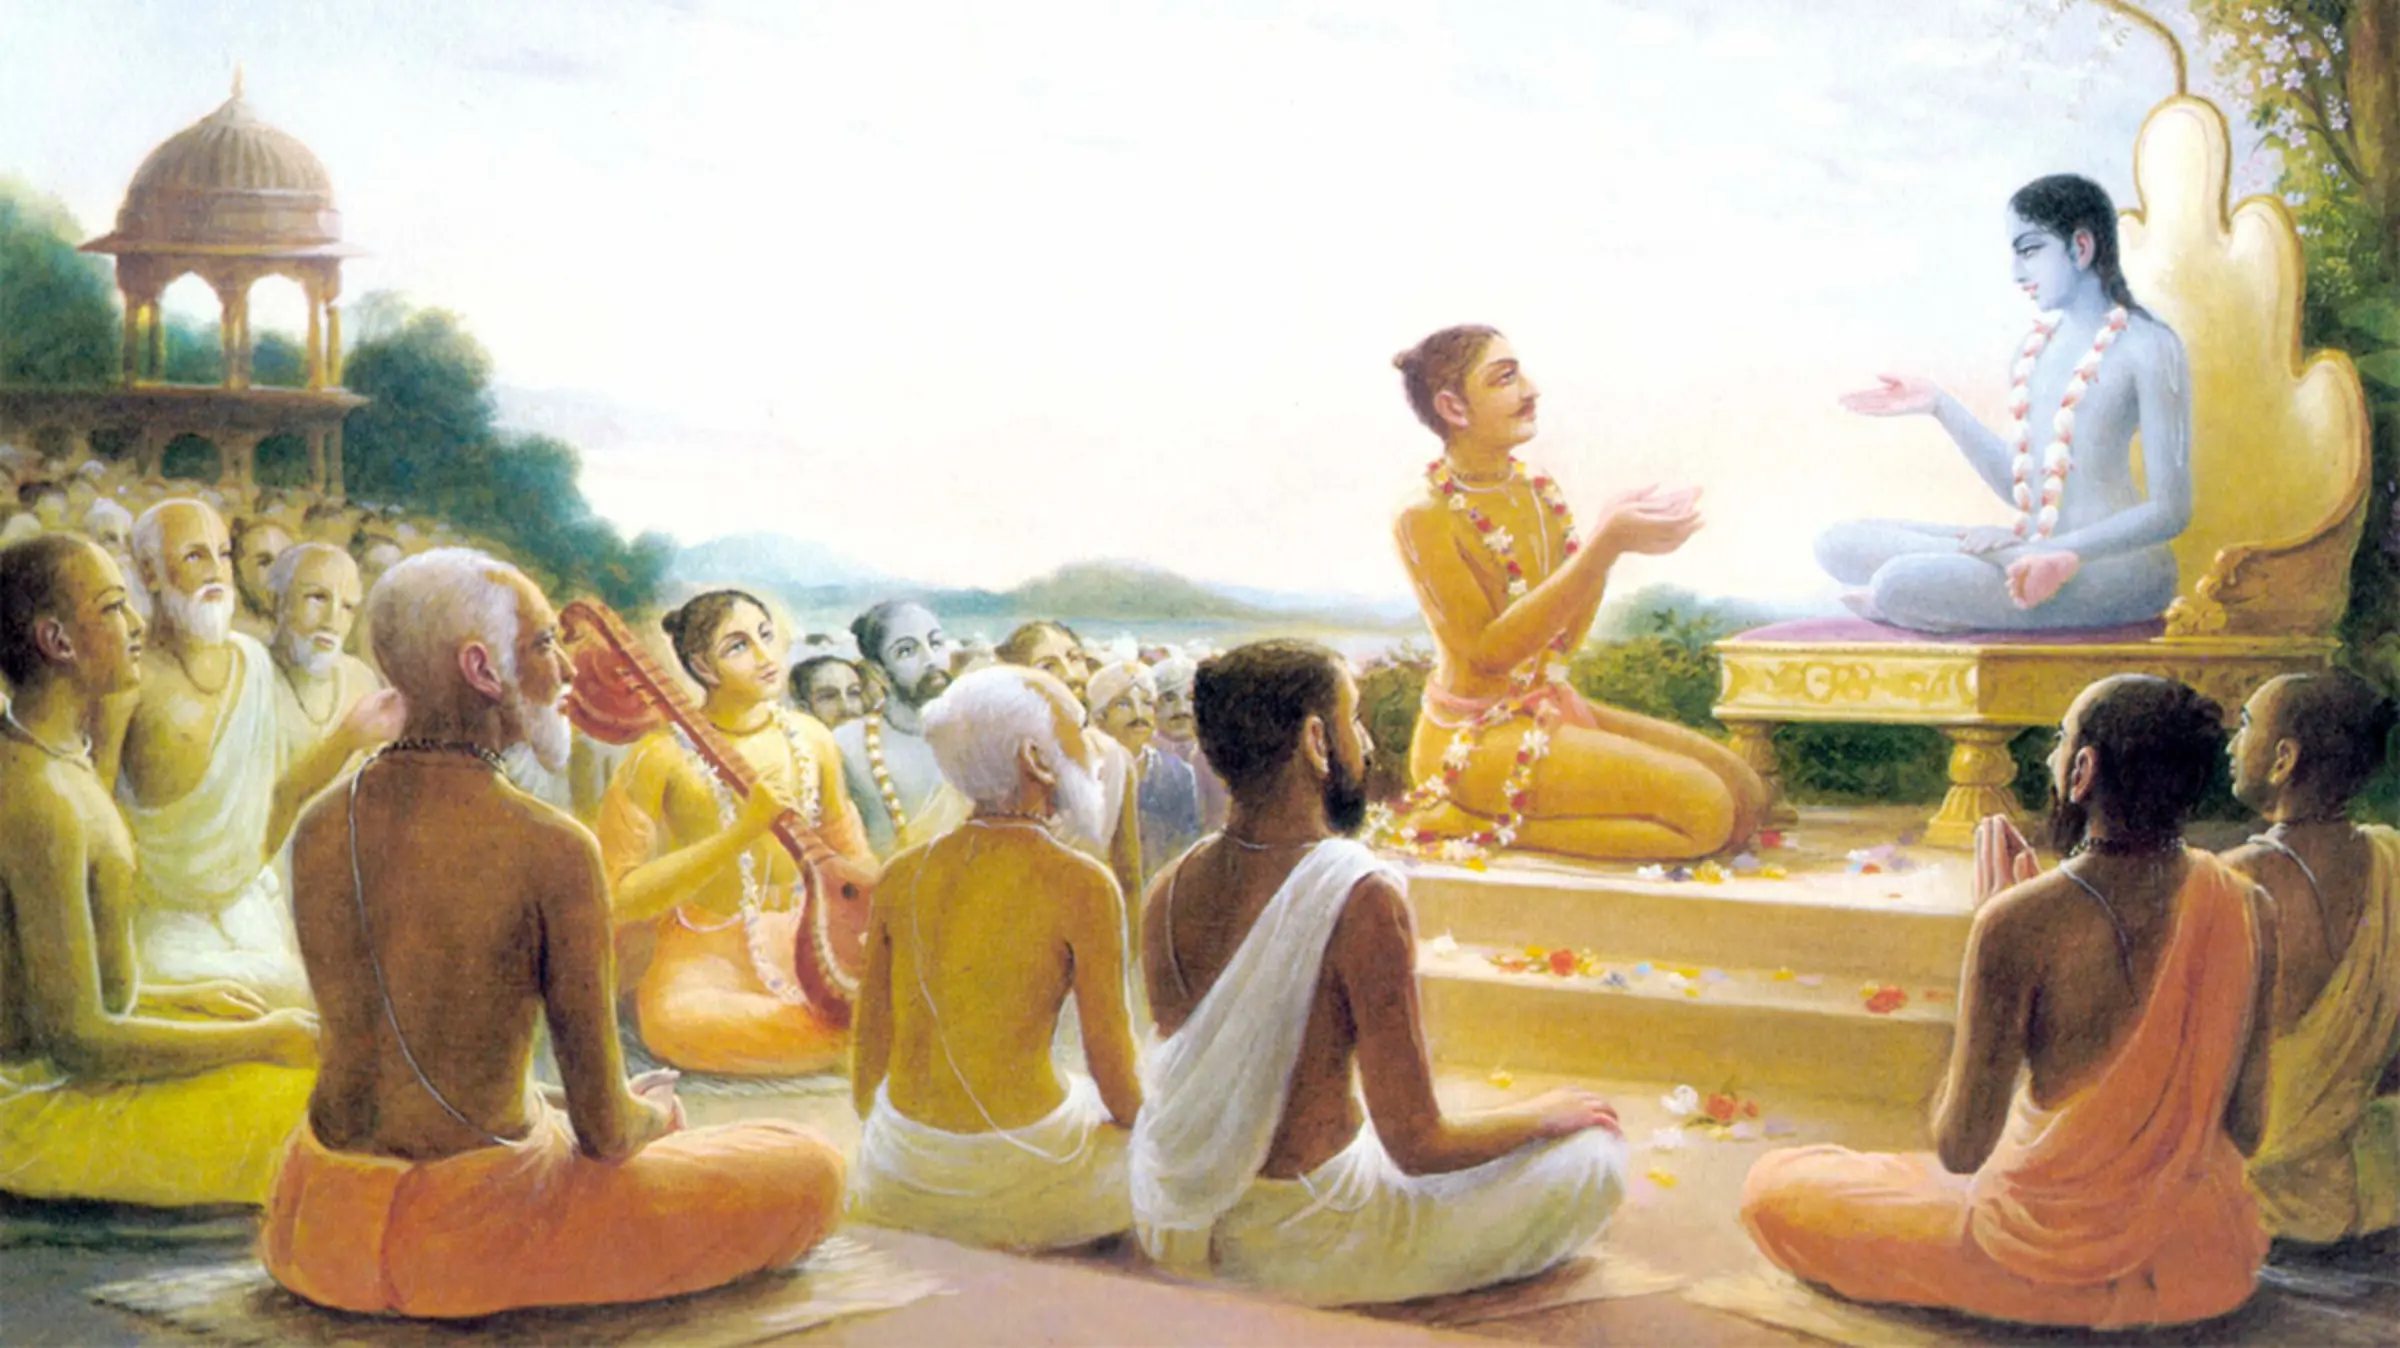 bhagavatam